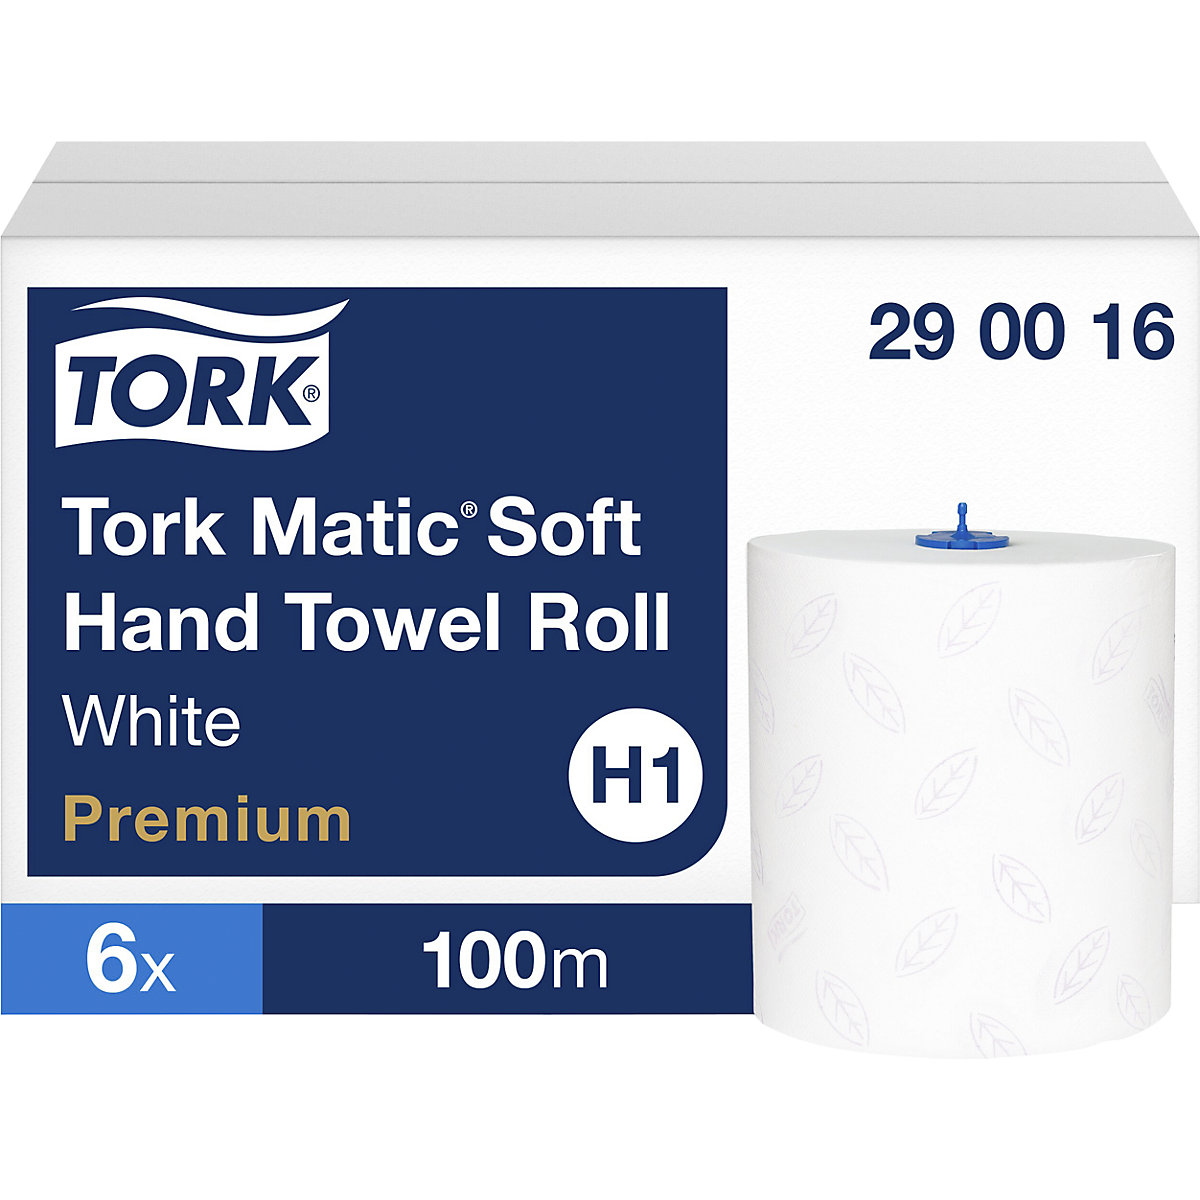 Serviettes en papier doux Tork Matic® – TORK, lot de 6 rouleaux de 100 m, 2 plis